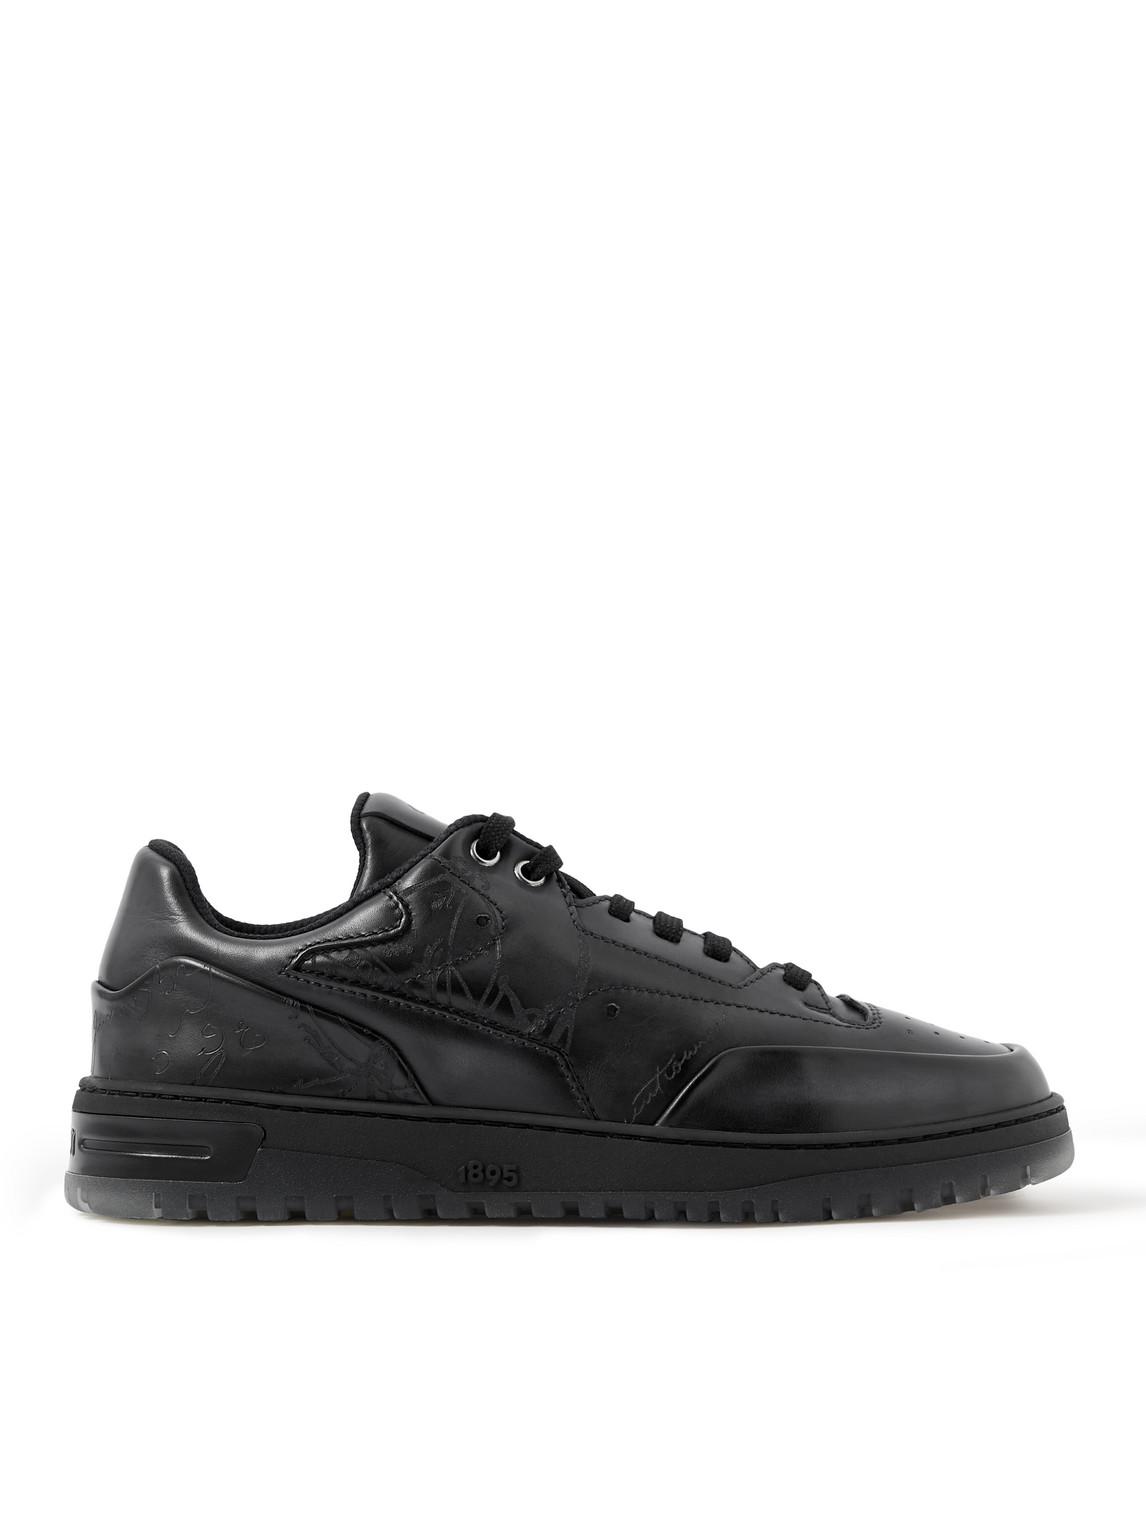 Shop Berluti Playoff Scritto Venezia Leather Sneakers In Black